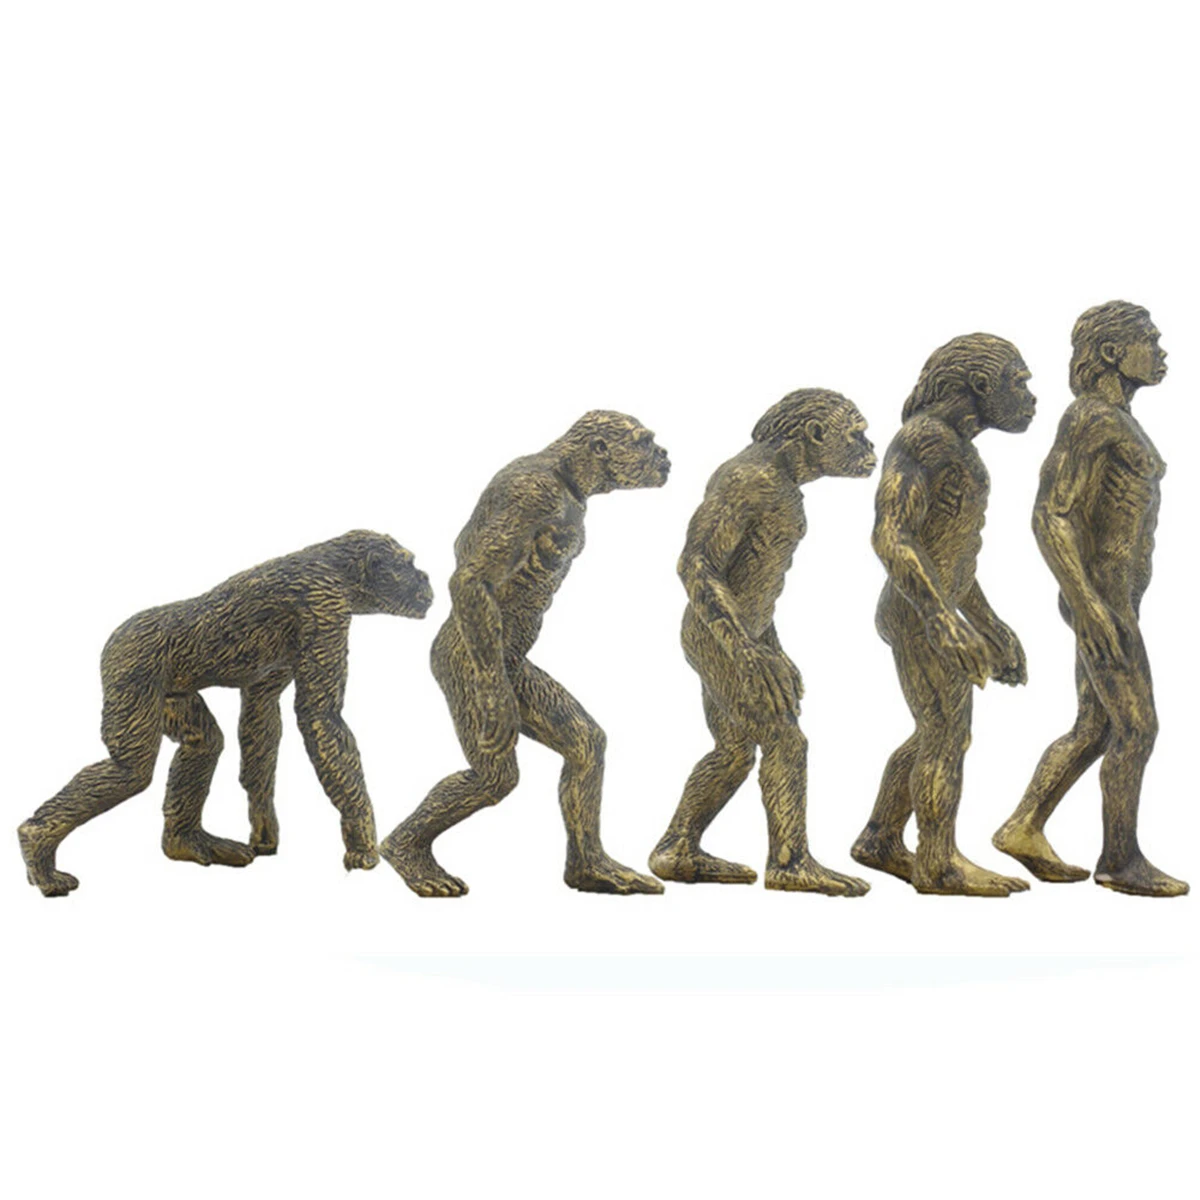 Ramapithecus australijczyk Homo Habilis Homo Erectus małpa człowiek rysunek edukacyjny paleobios kolekcjonerski Model zabawkowy